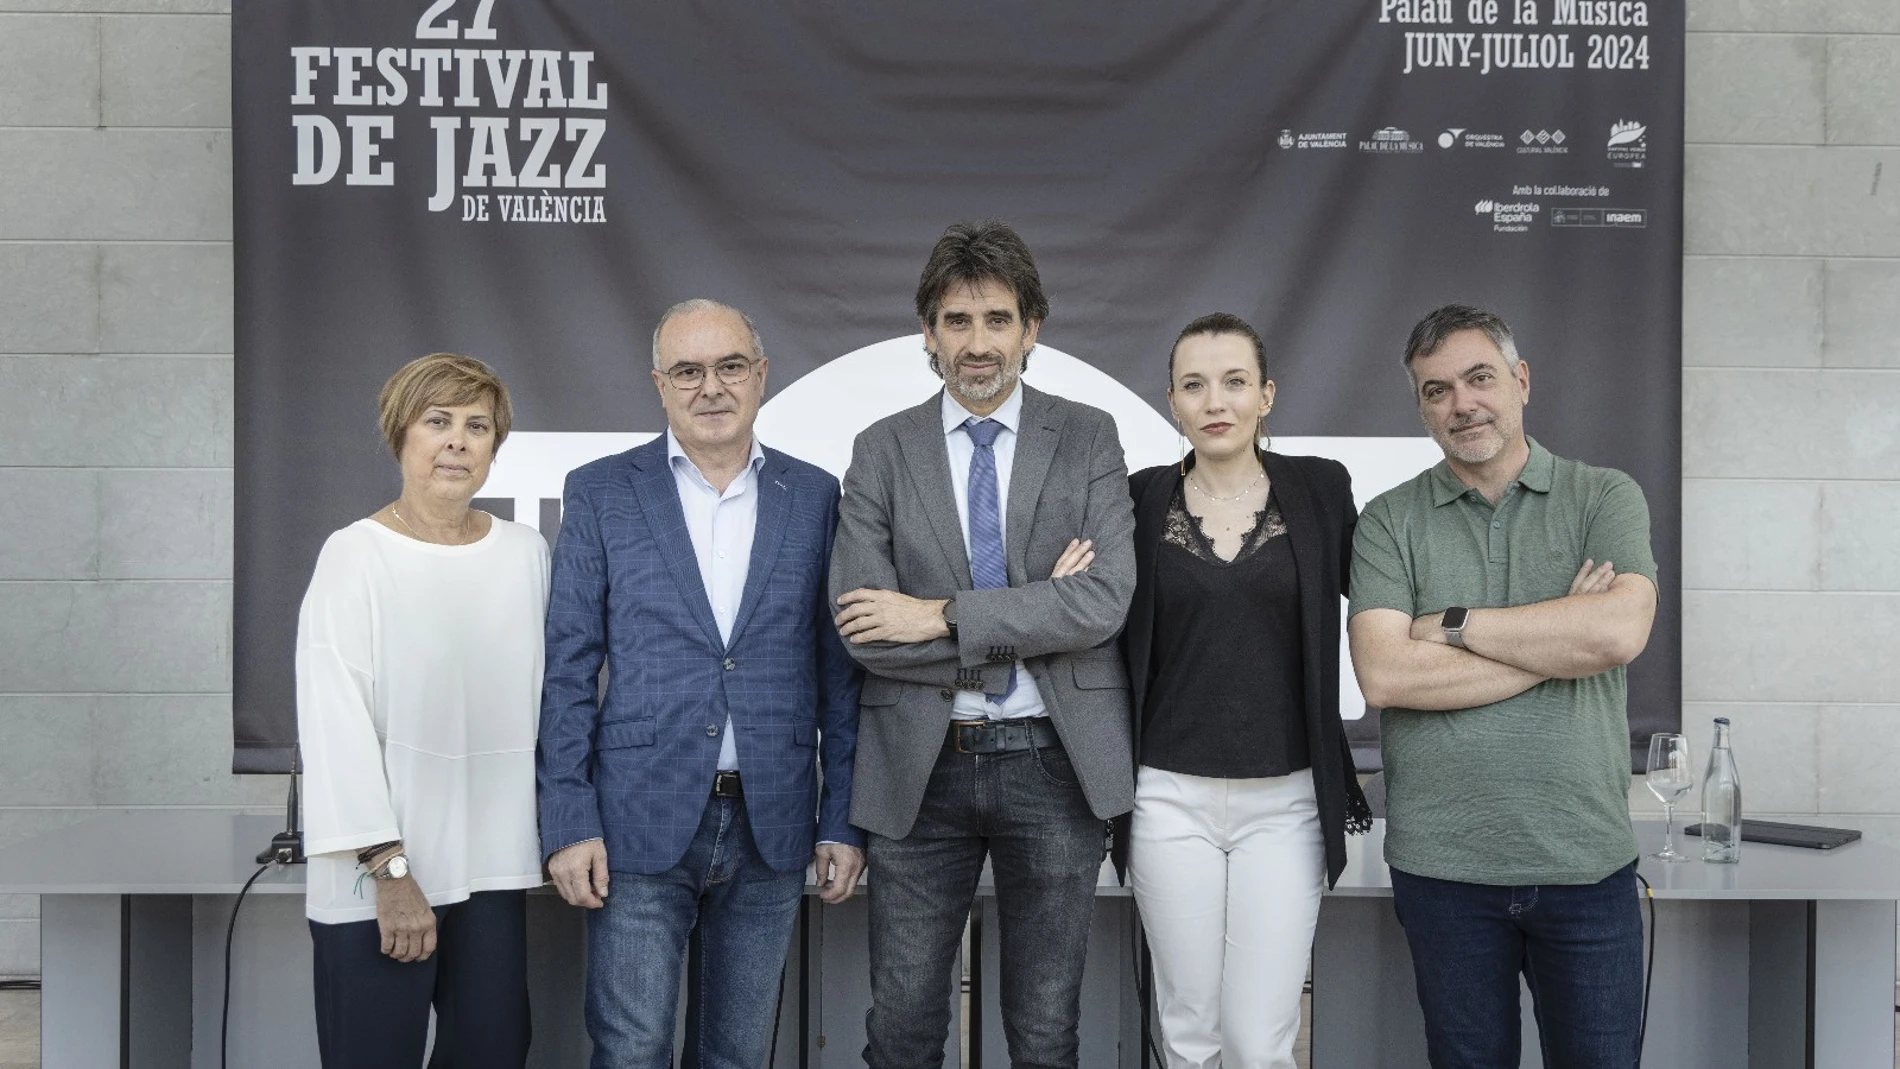 Presentación de la 27ª edición del Festival de Jazz de València en el Palau de la Música. AYUNTAMIENTO DE VALÈNCIA 24/05/2024